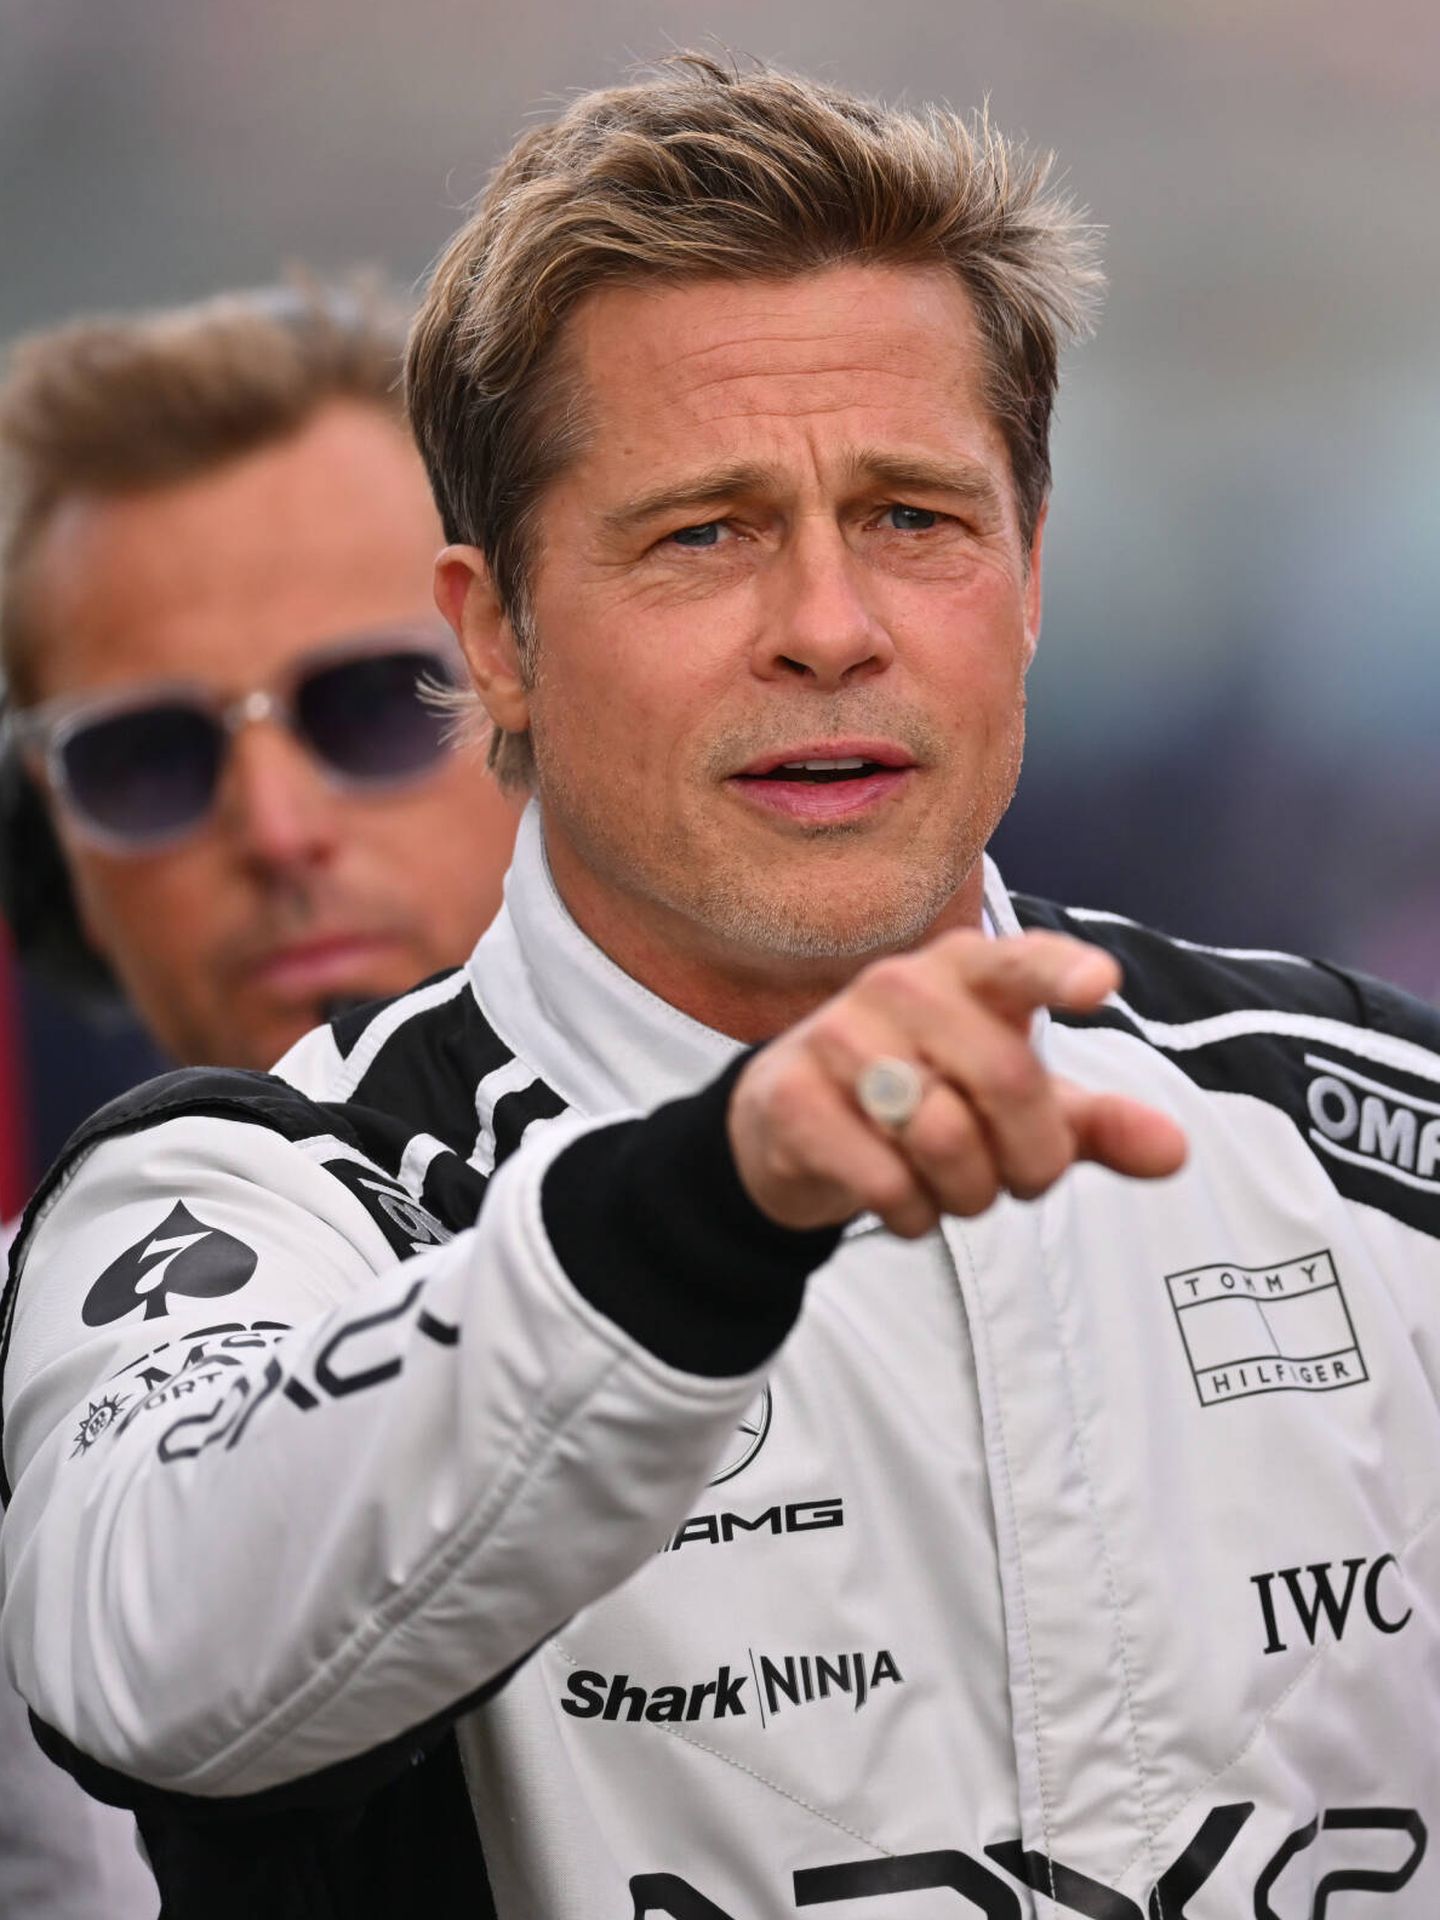 Brad Pitt, en Silverstone. (Getty/Ryan Pierse)